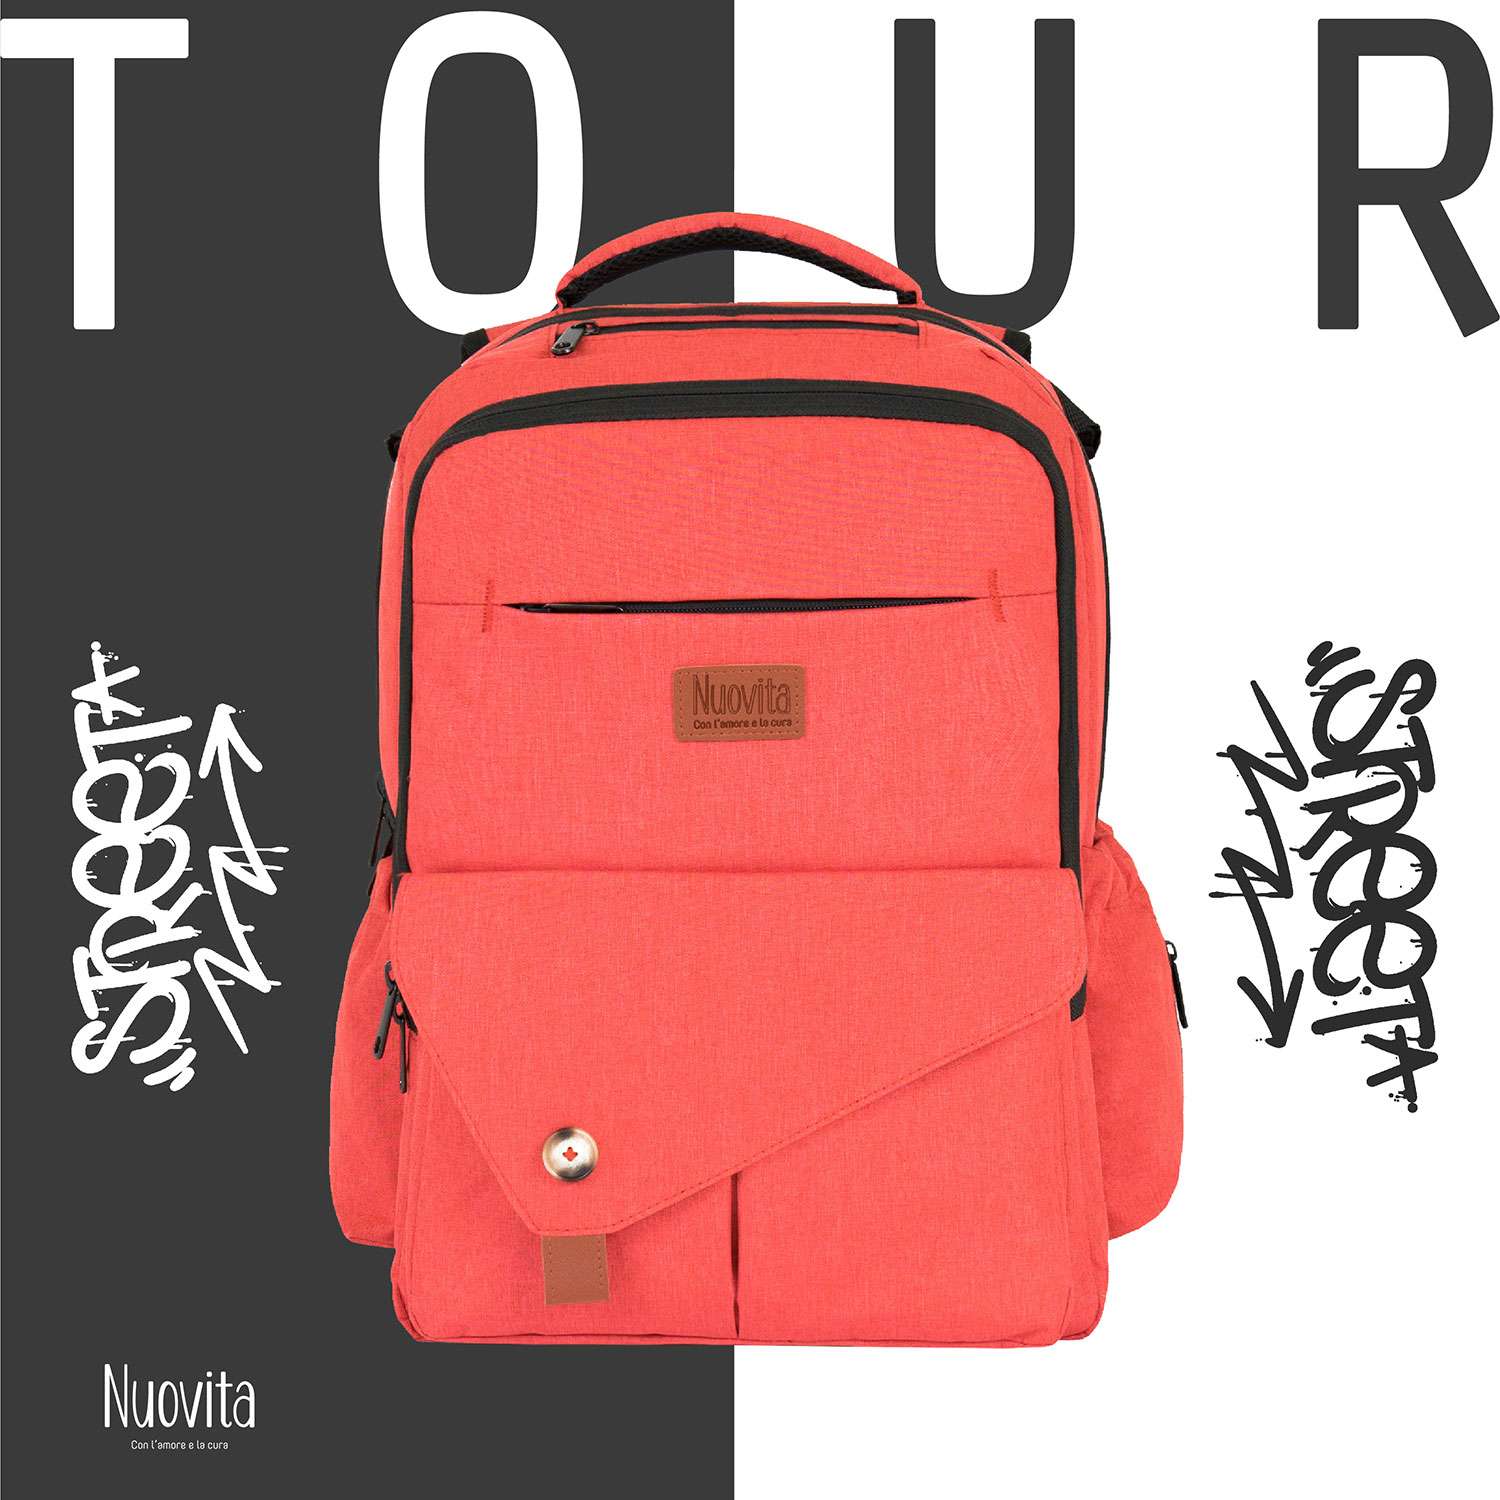 Рюкзак для мамы Nuovita CAPCAP tour Красный - фото 2